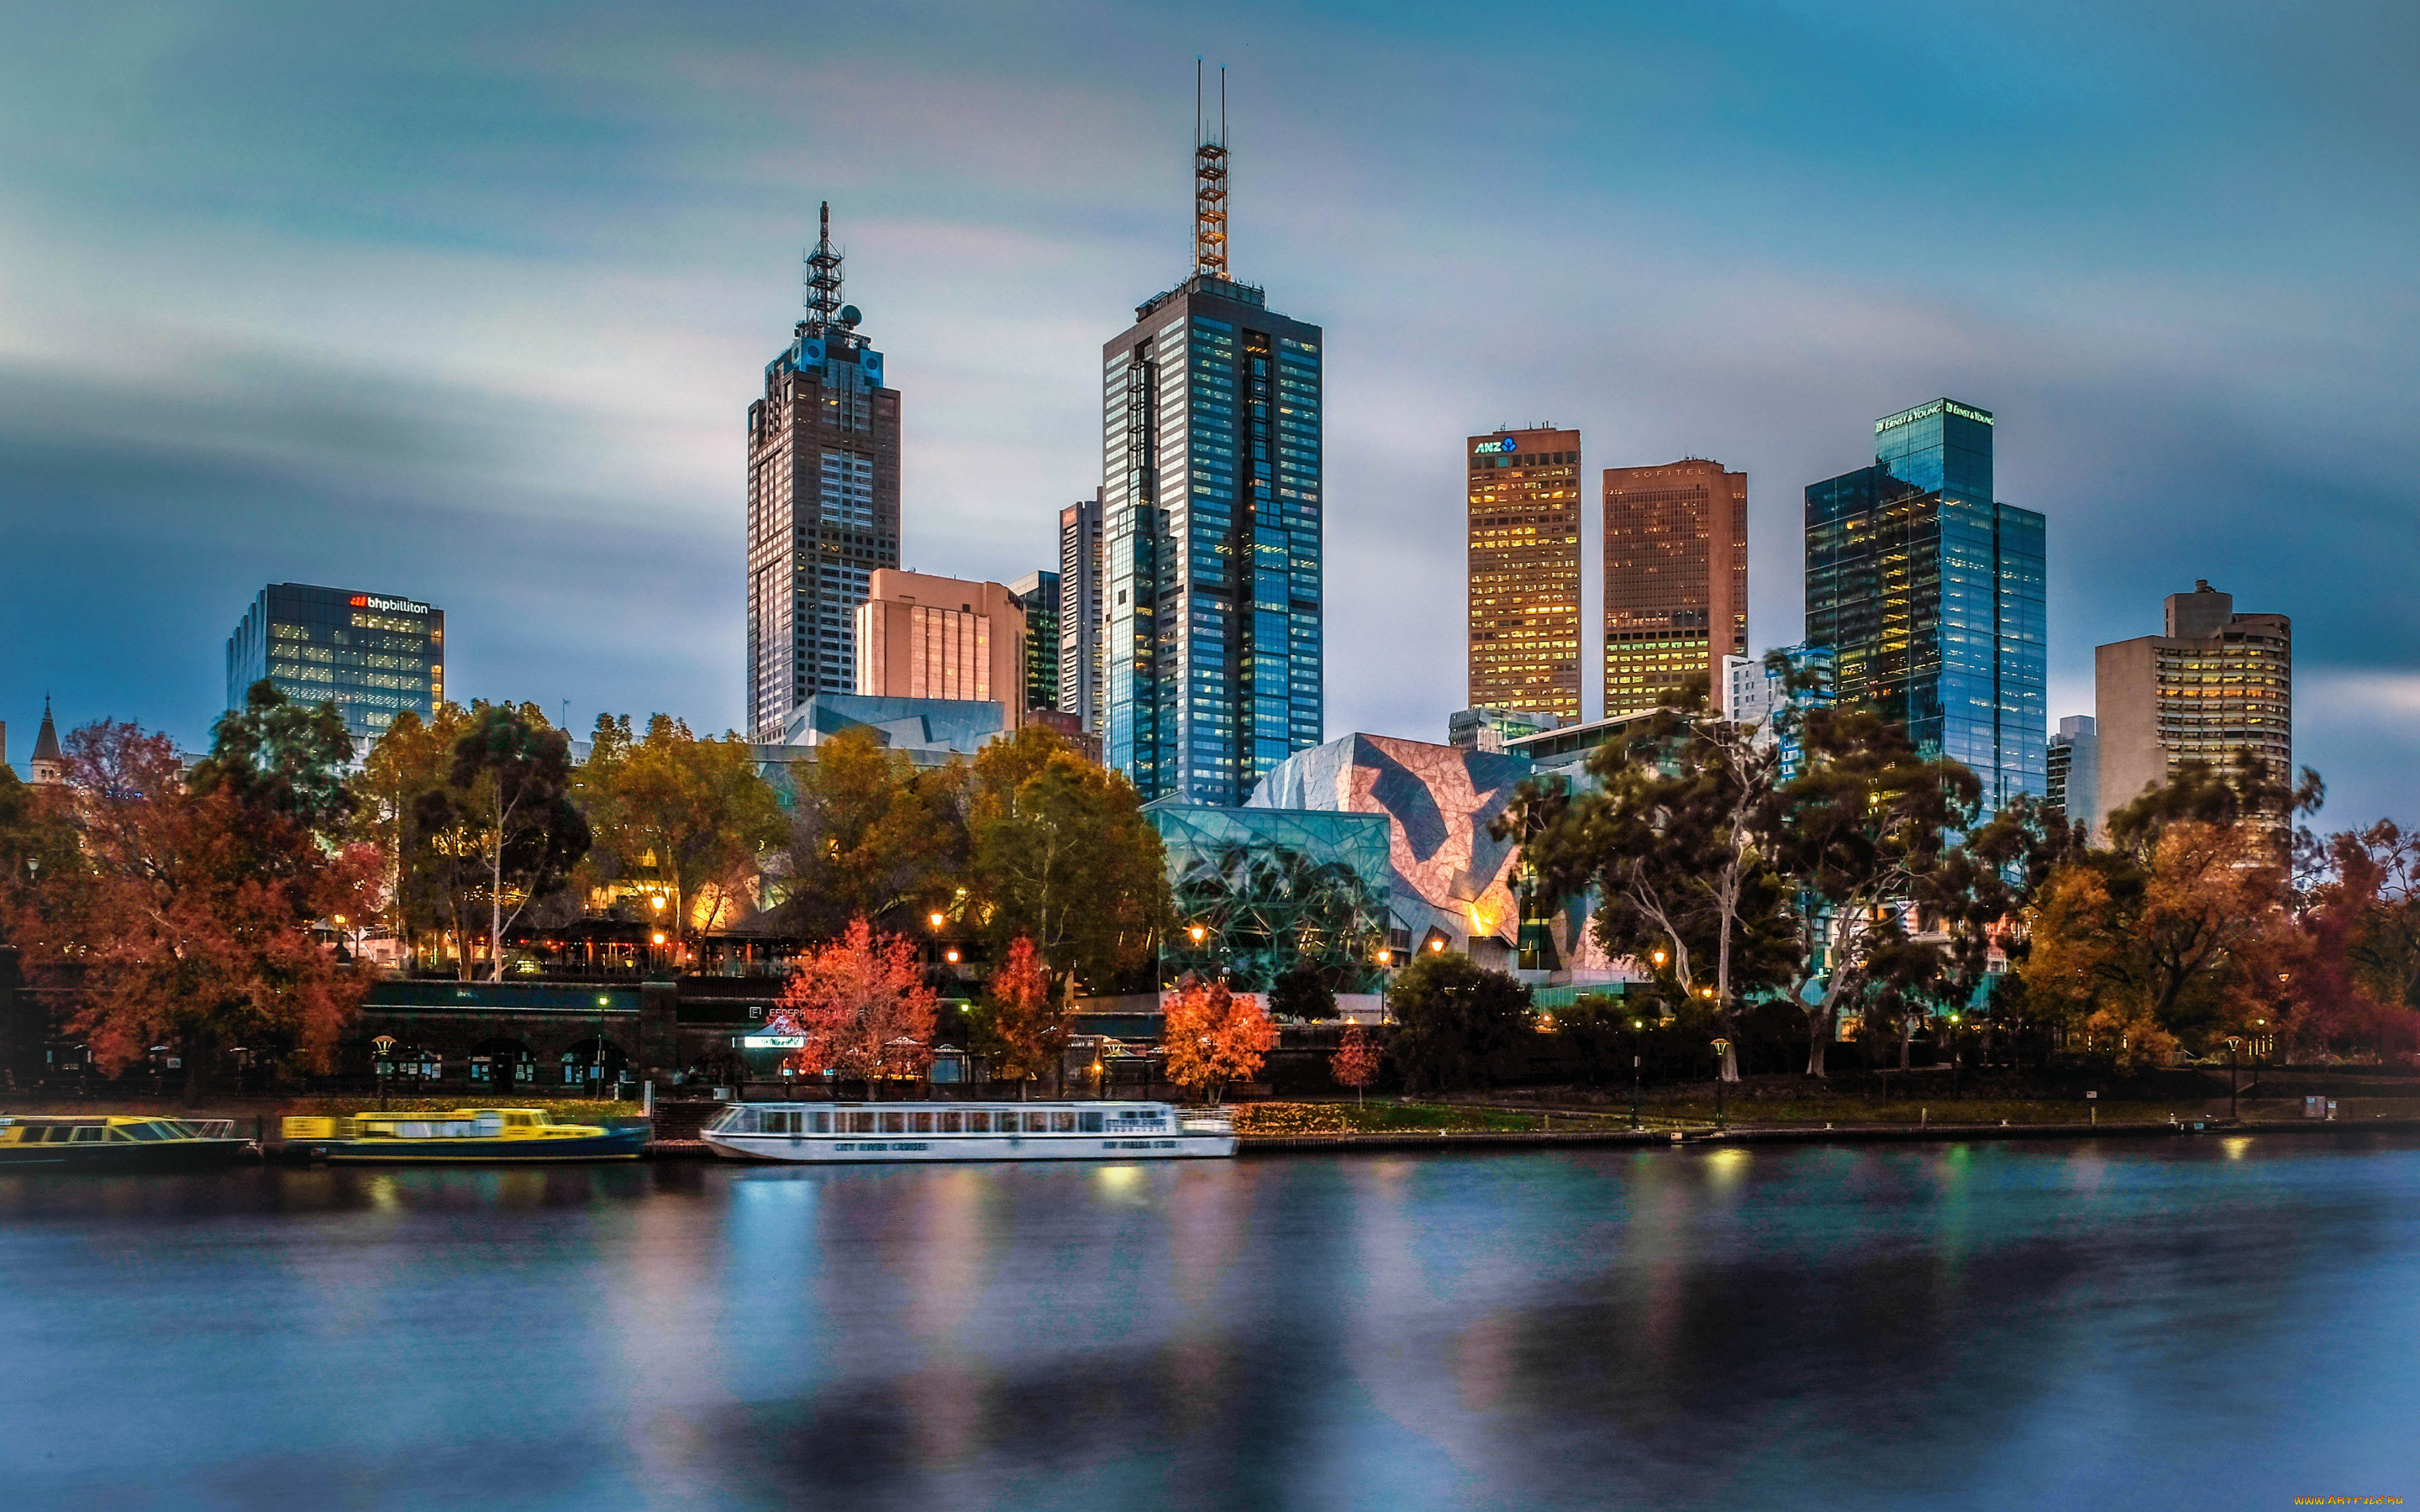 Обои Города Мельбурн (Австралия), обои для рабочего стола, фотографии  города, мельбурн , австралия, мельбурн, вечер, закат, небоскребы,  современные, здания, городской, вид Обои для рабочего стола, скачать обои  картинки заставки на рабочий стол.